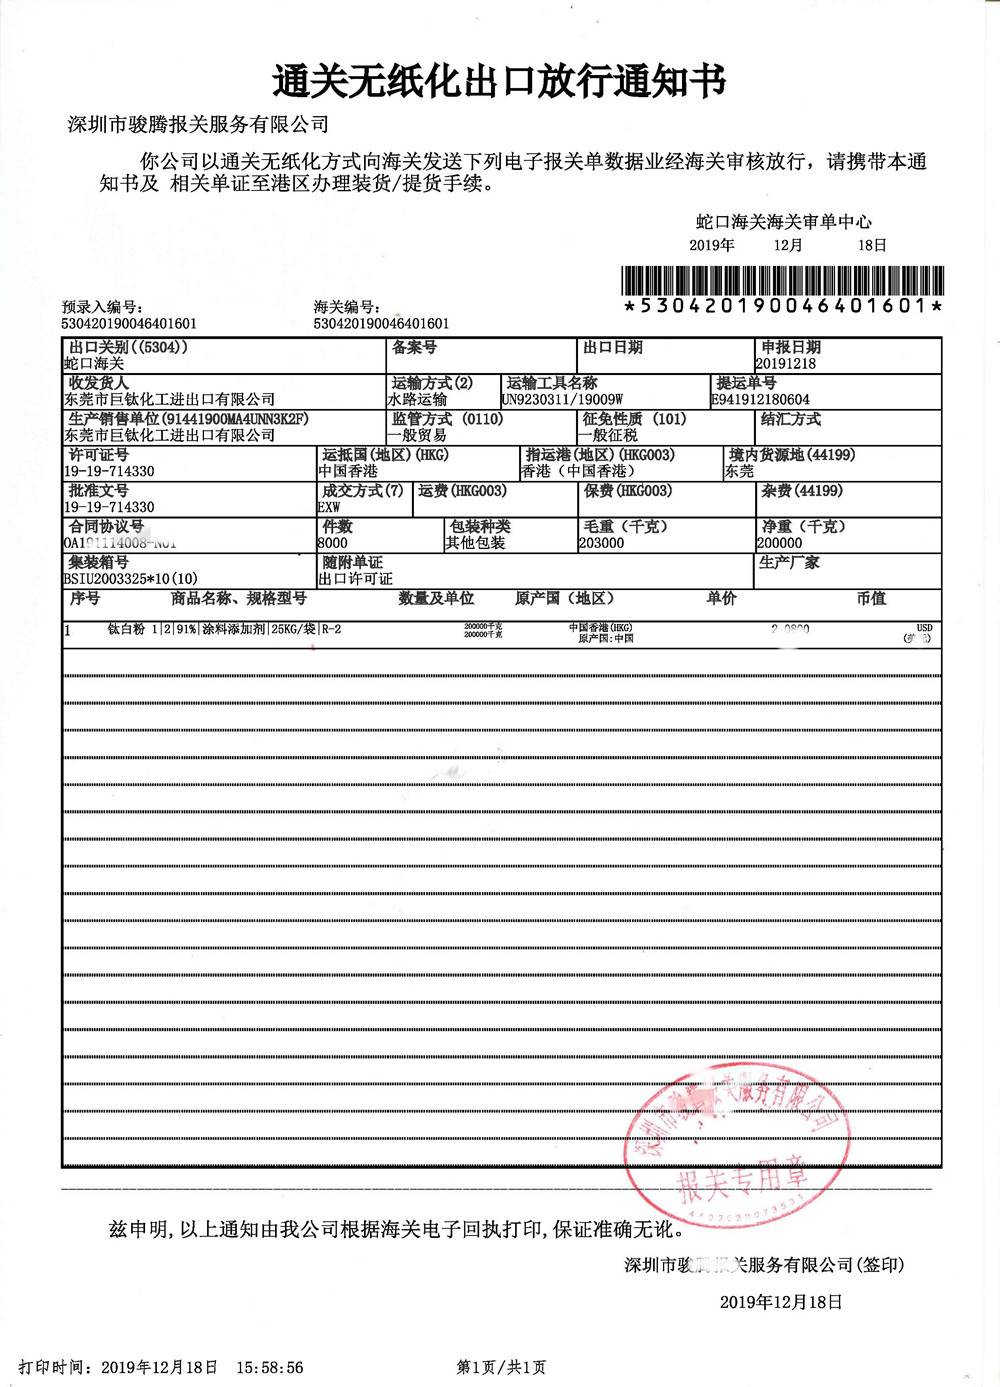 CCTiO2 Customs Release Notice Sample